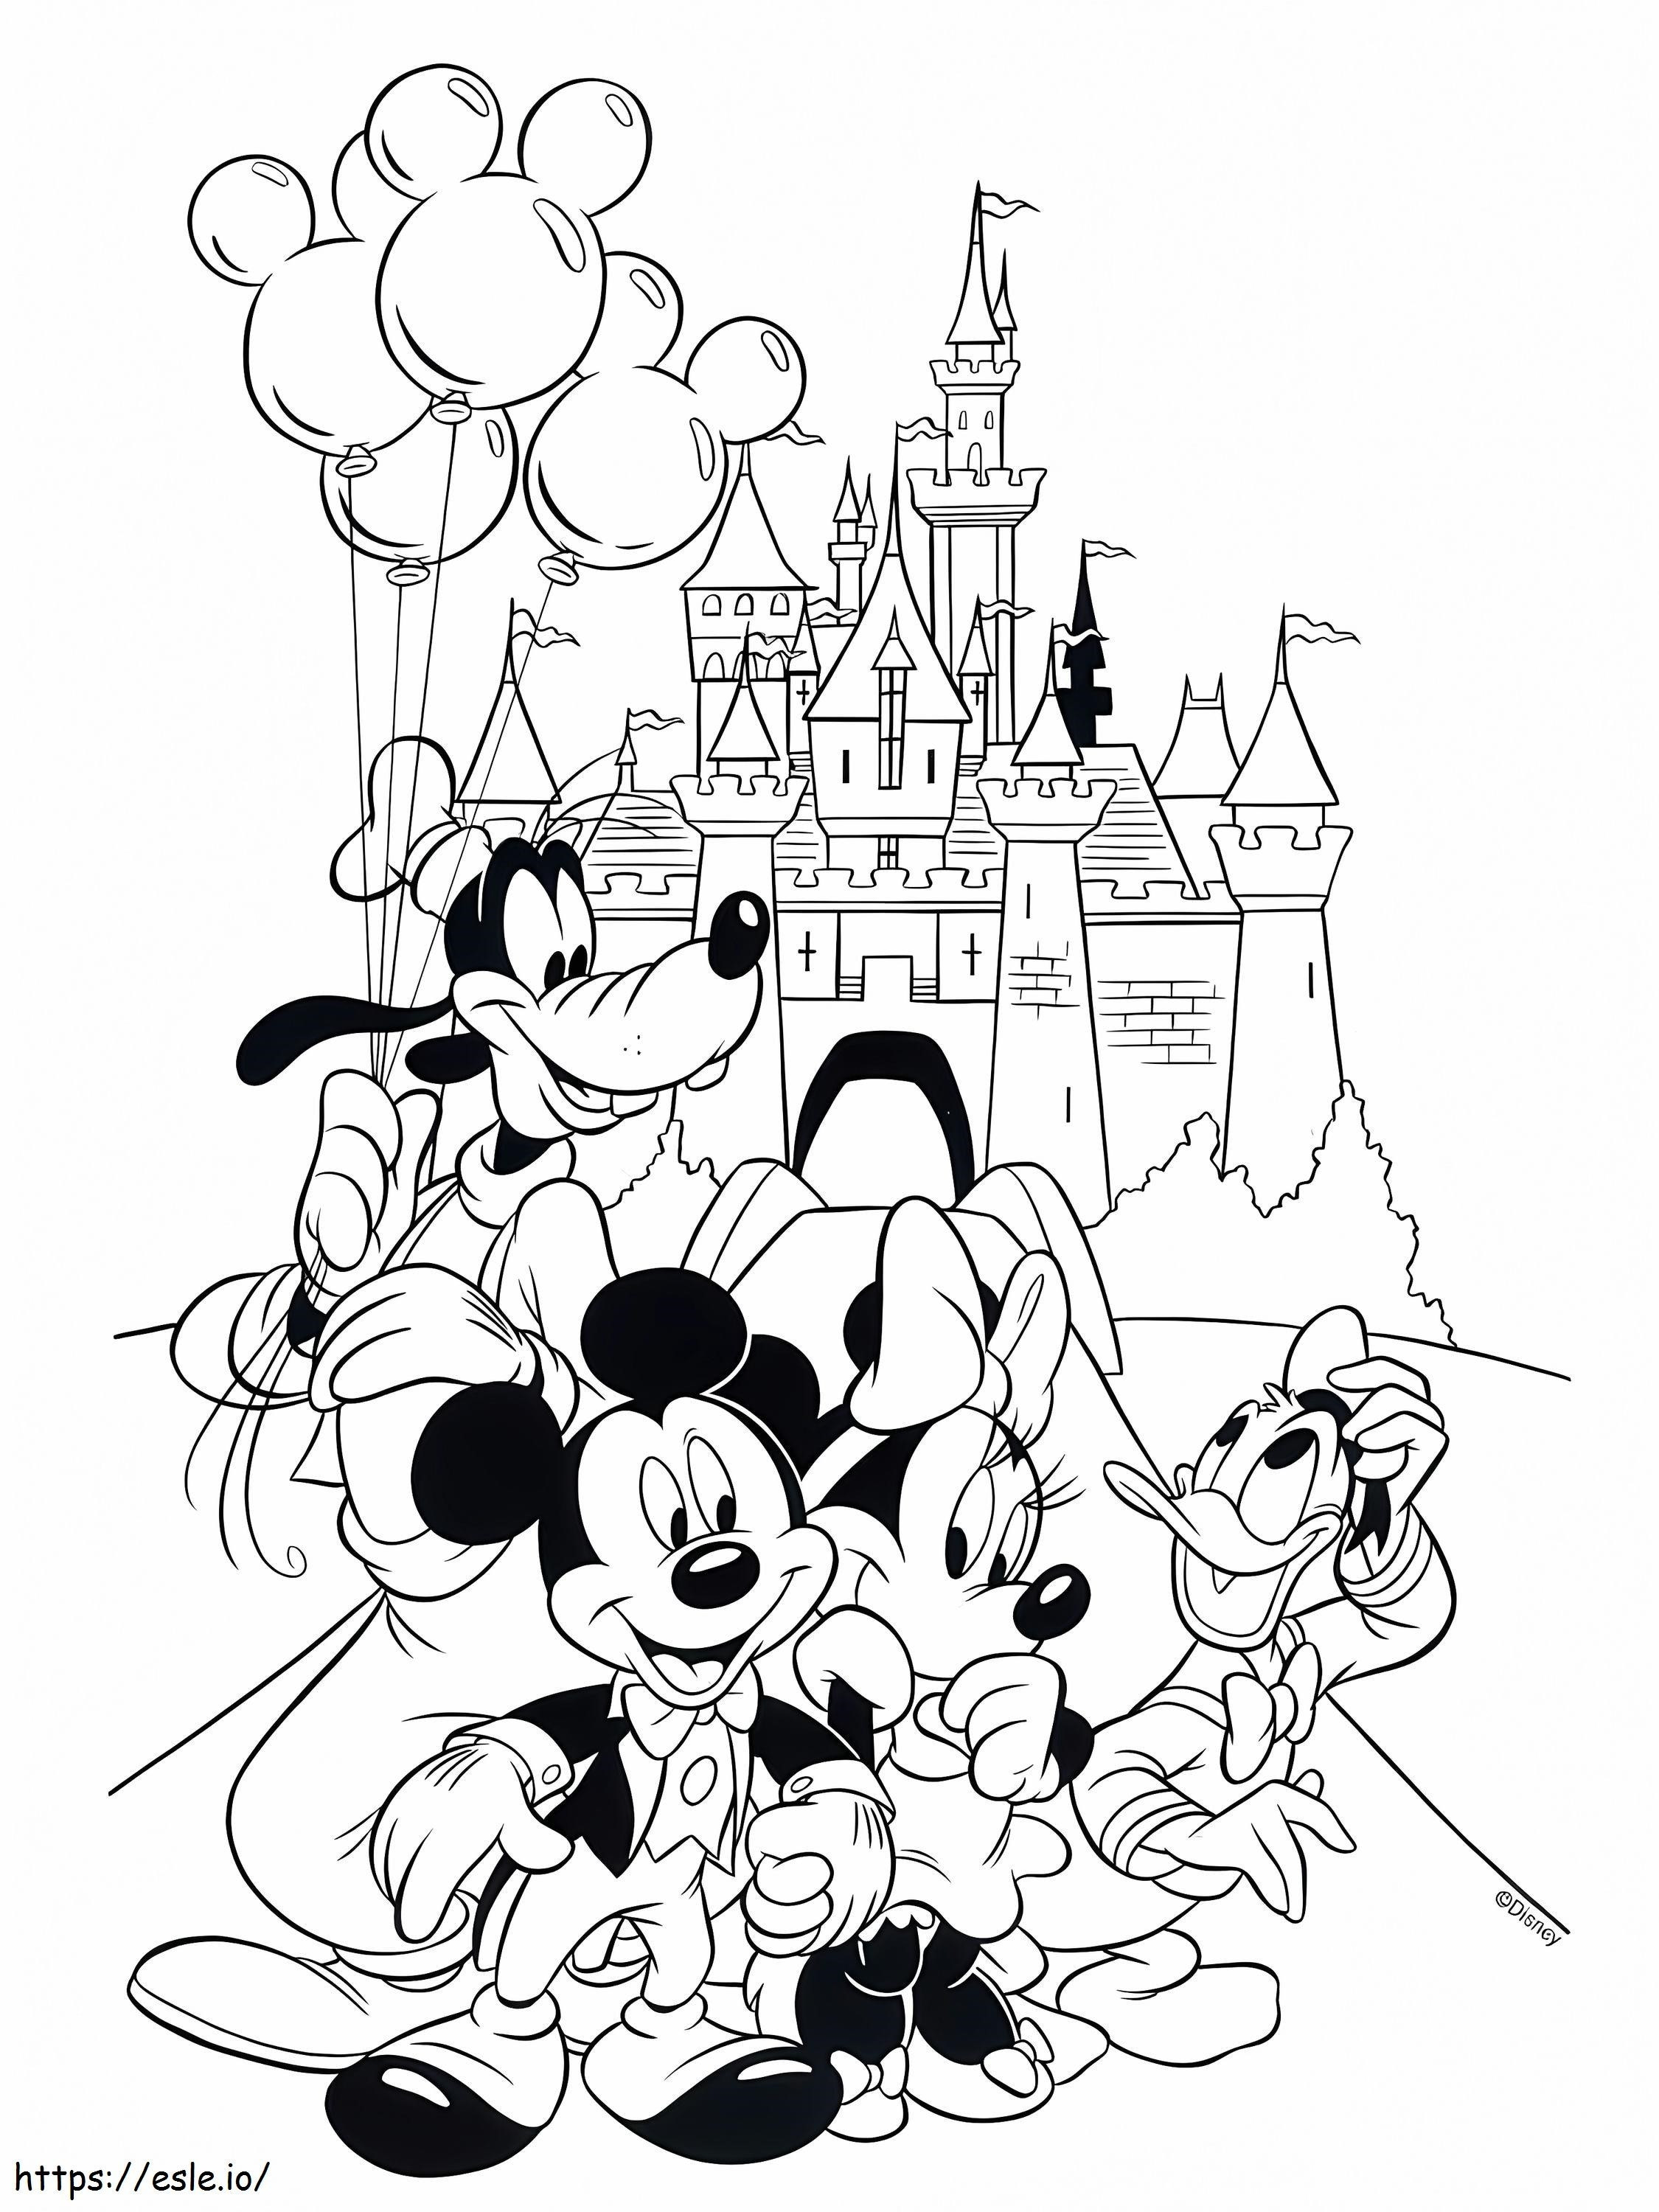 Personaje Disney și Castelul de colorat